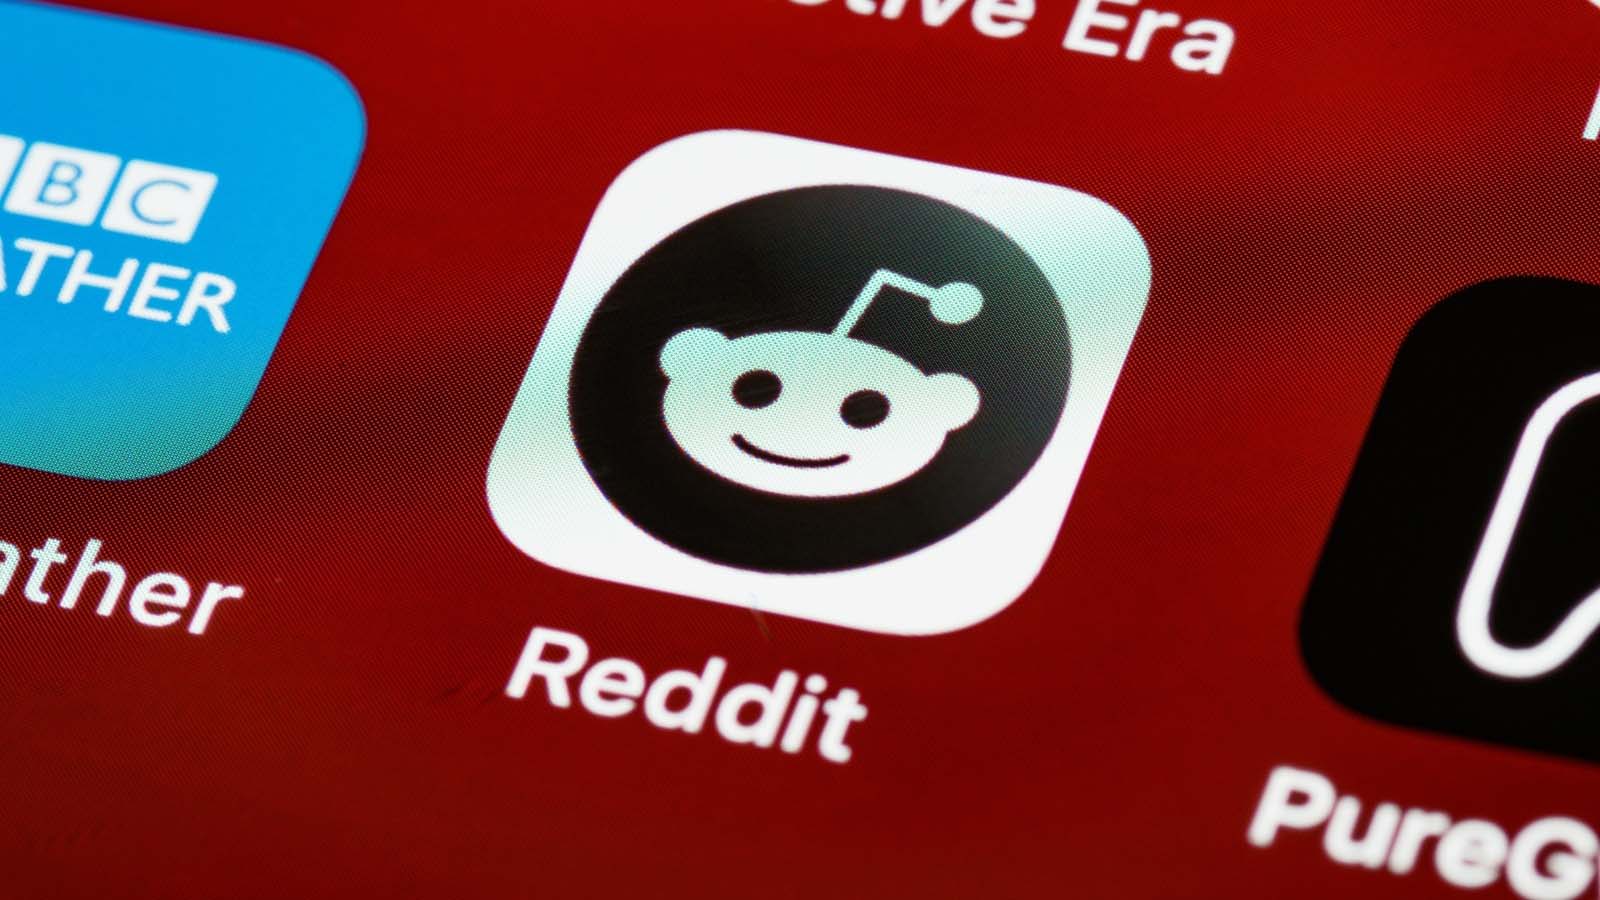 Le dichiarazioni di Reddit sulla fase iniziale di monetizzazione e le sfide che potrebbe affrontare nel suo percorso finanziario